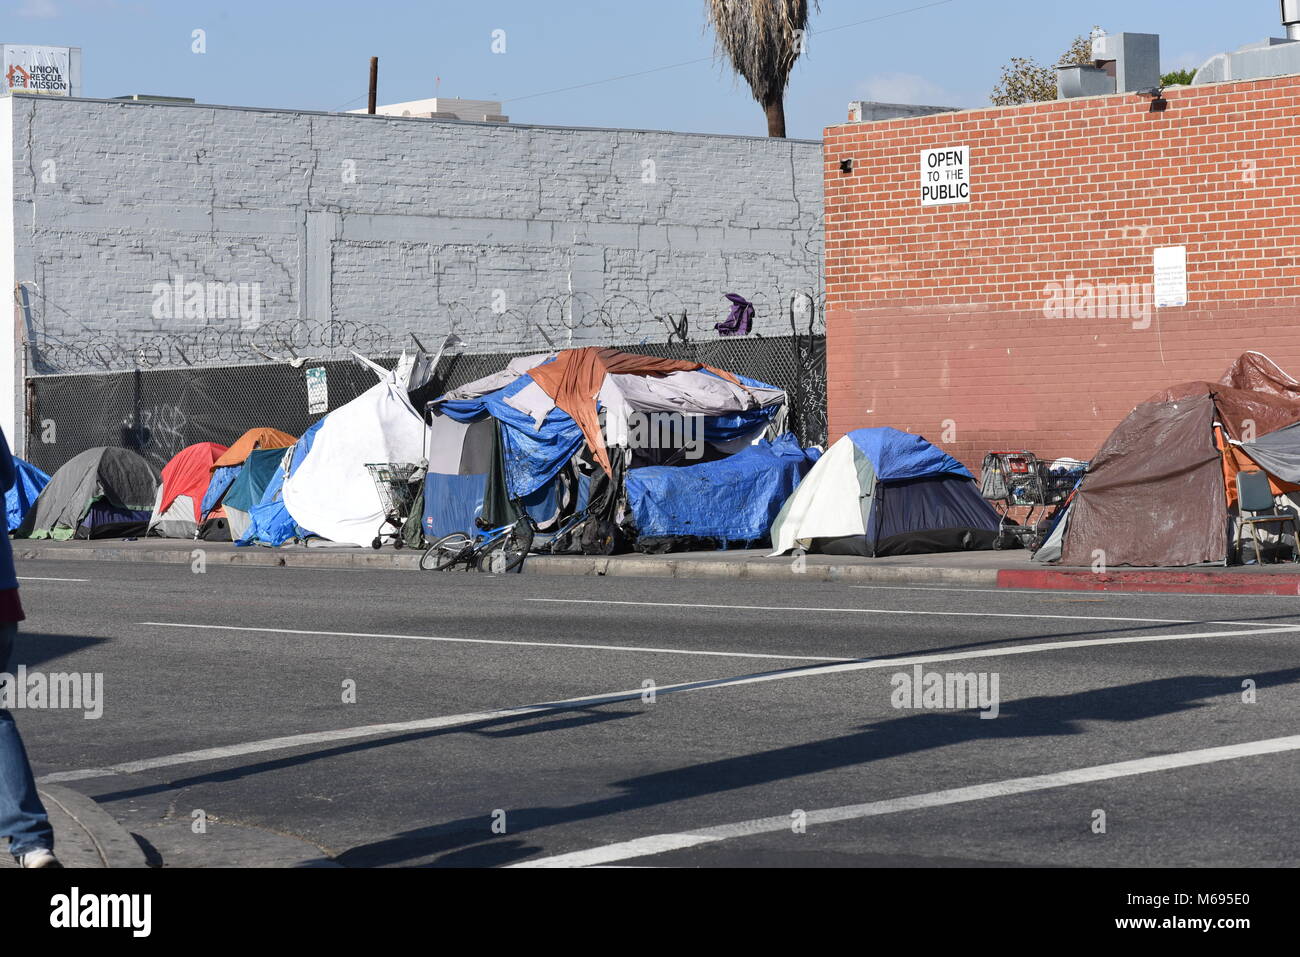 Szenen aus Skid Row ein Bereich der Innenstadt von Los Angeles, ist einer der größten stabile Populationen (zwischen 5.000 und 8.000) von Obdachlosen. Stockfoto